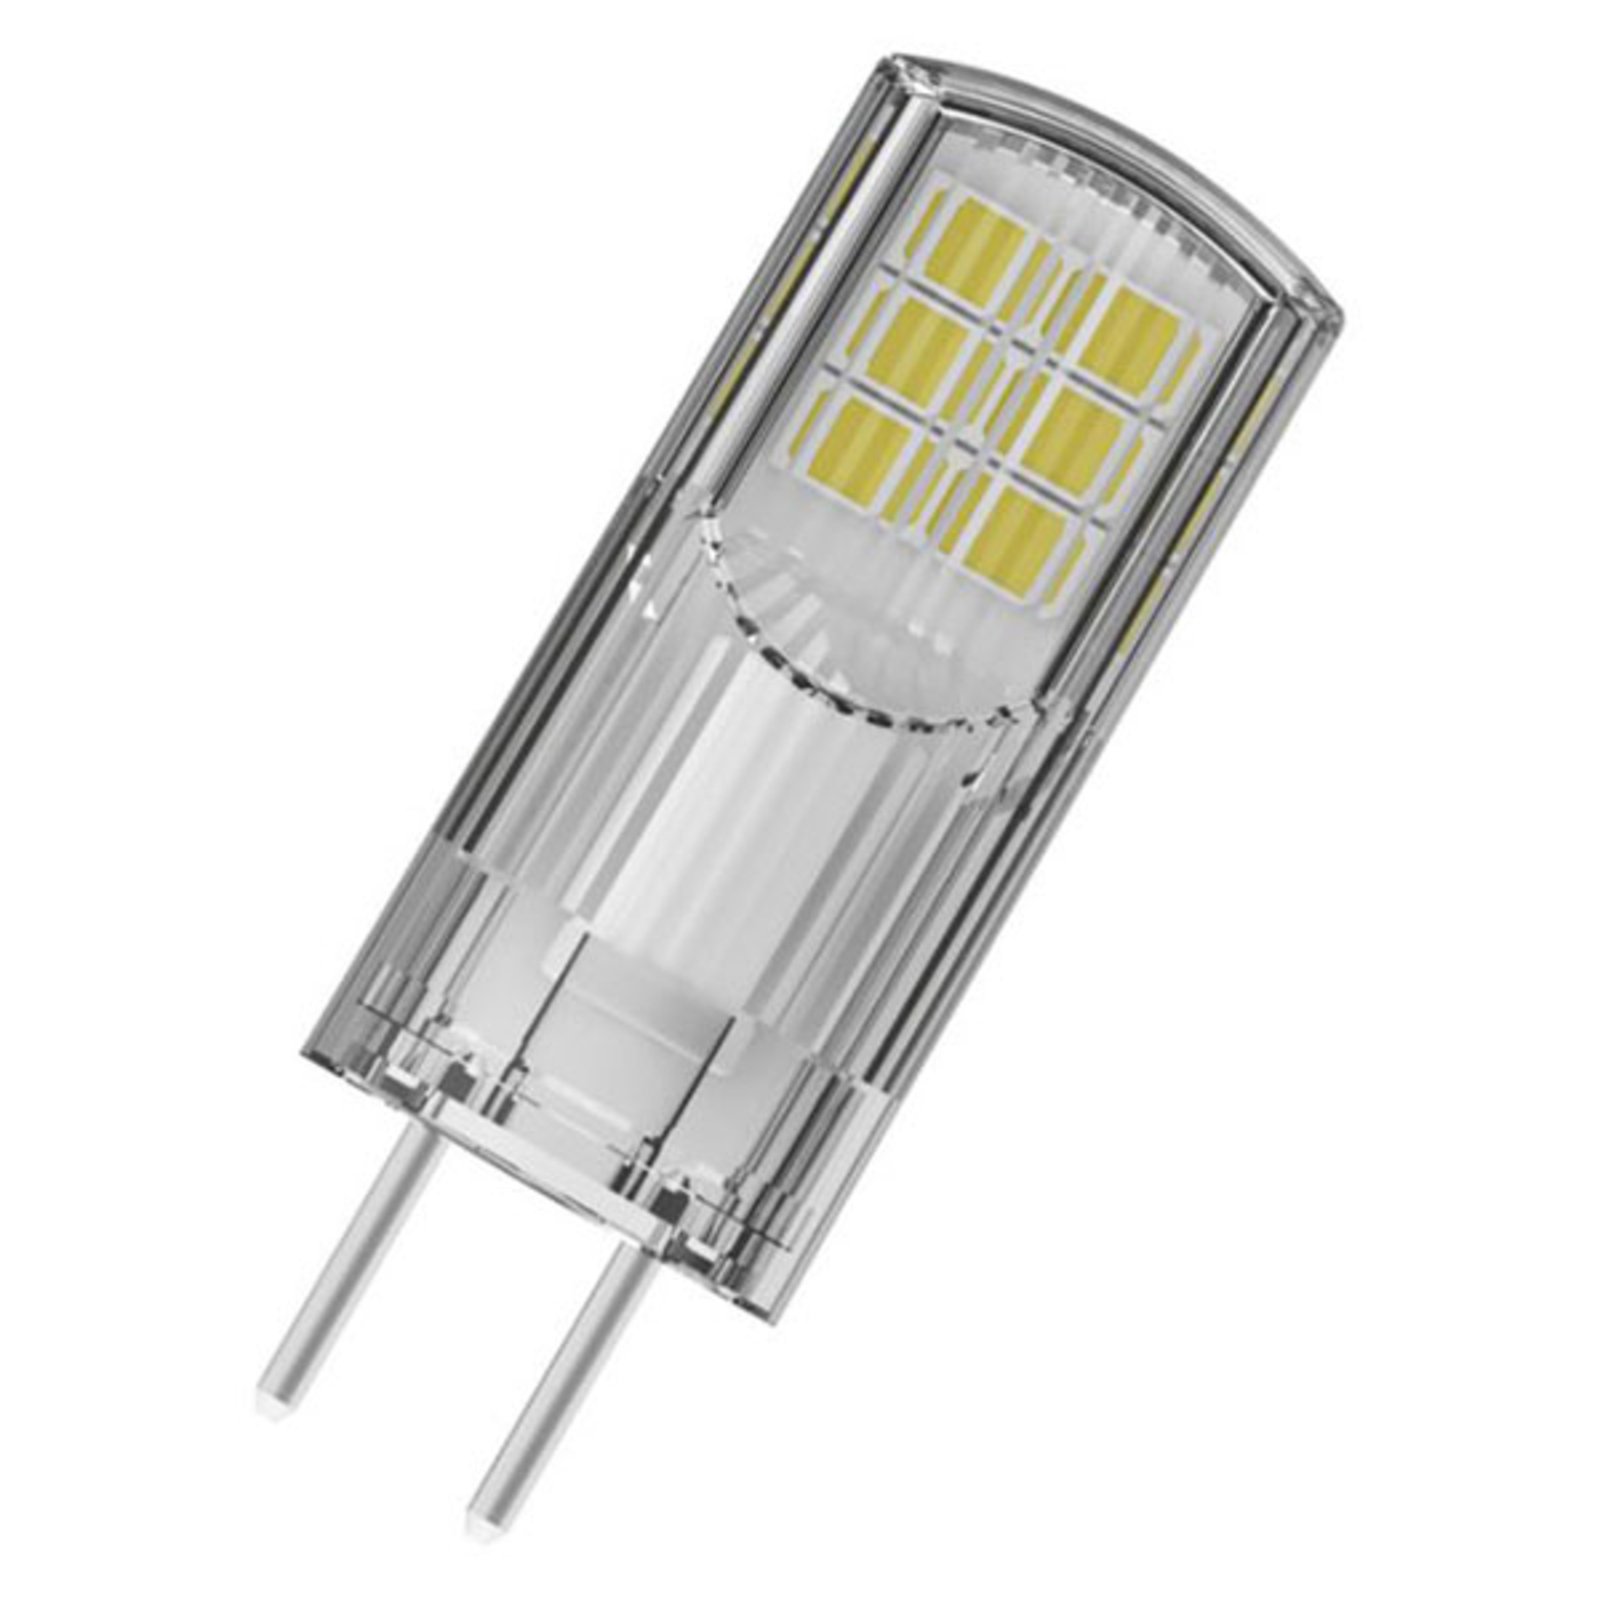 OSRAM LED kolíková GY6,35 2,6W, teplá, 300 lm